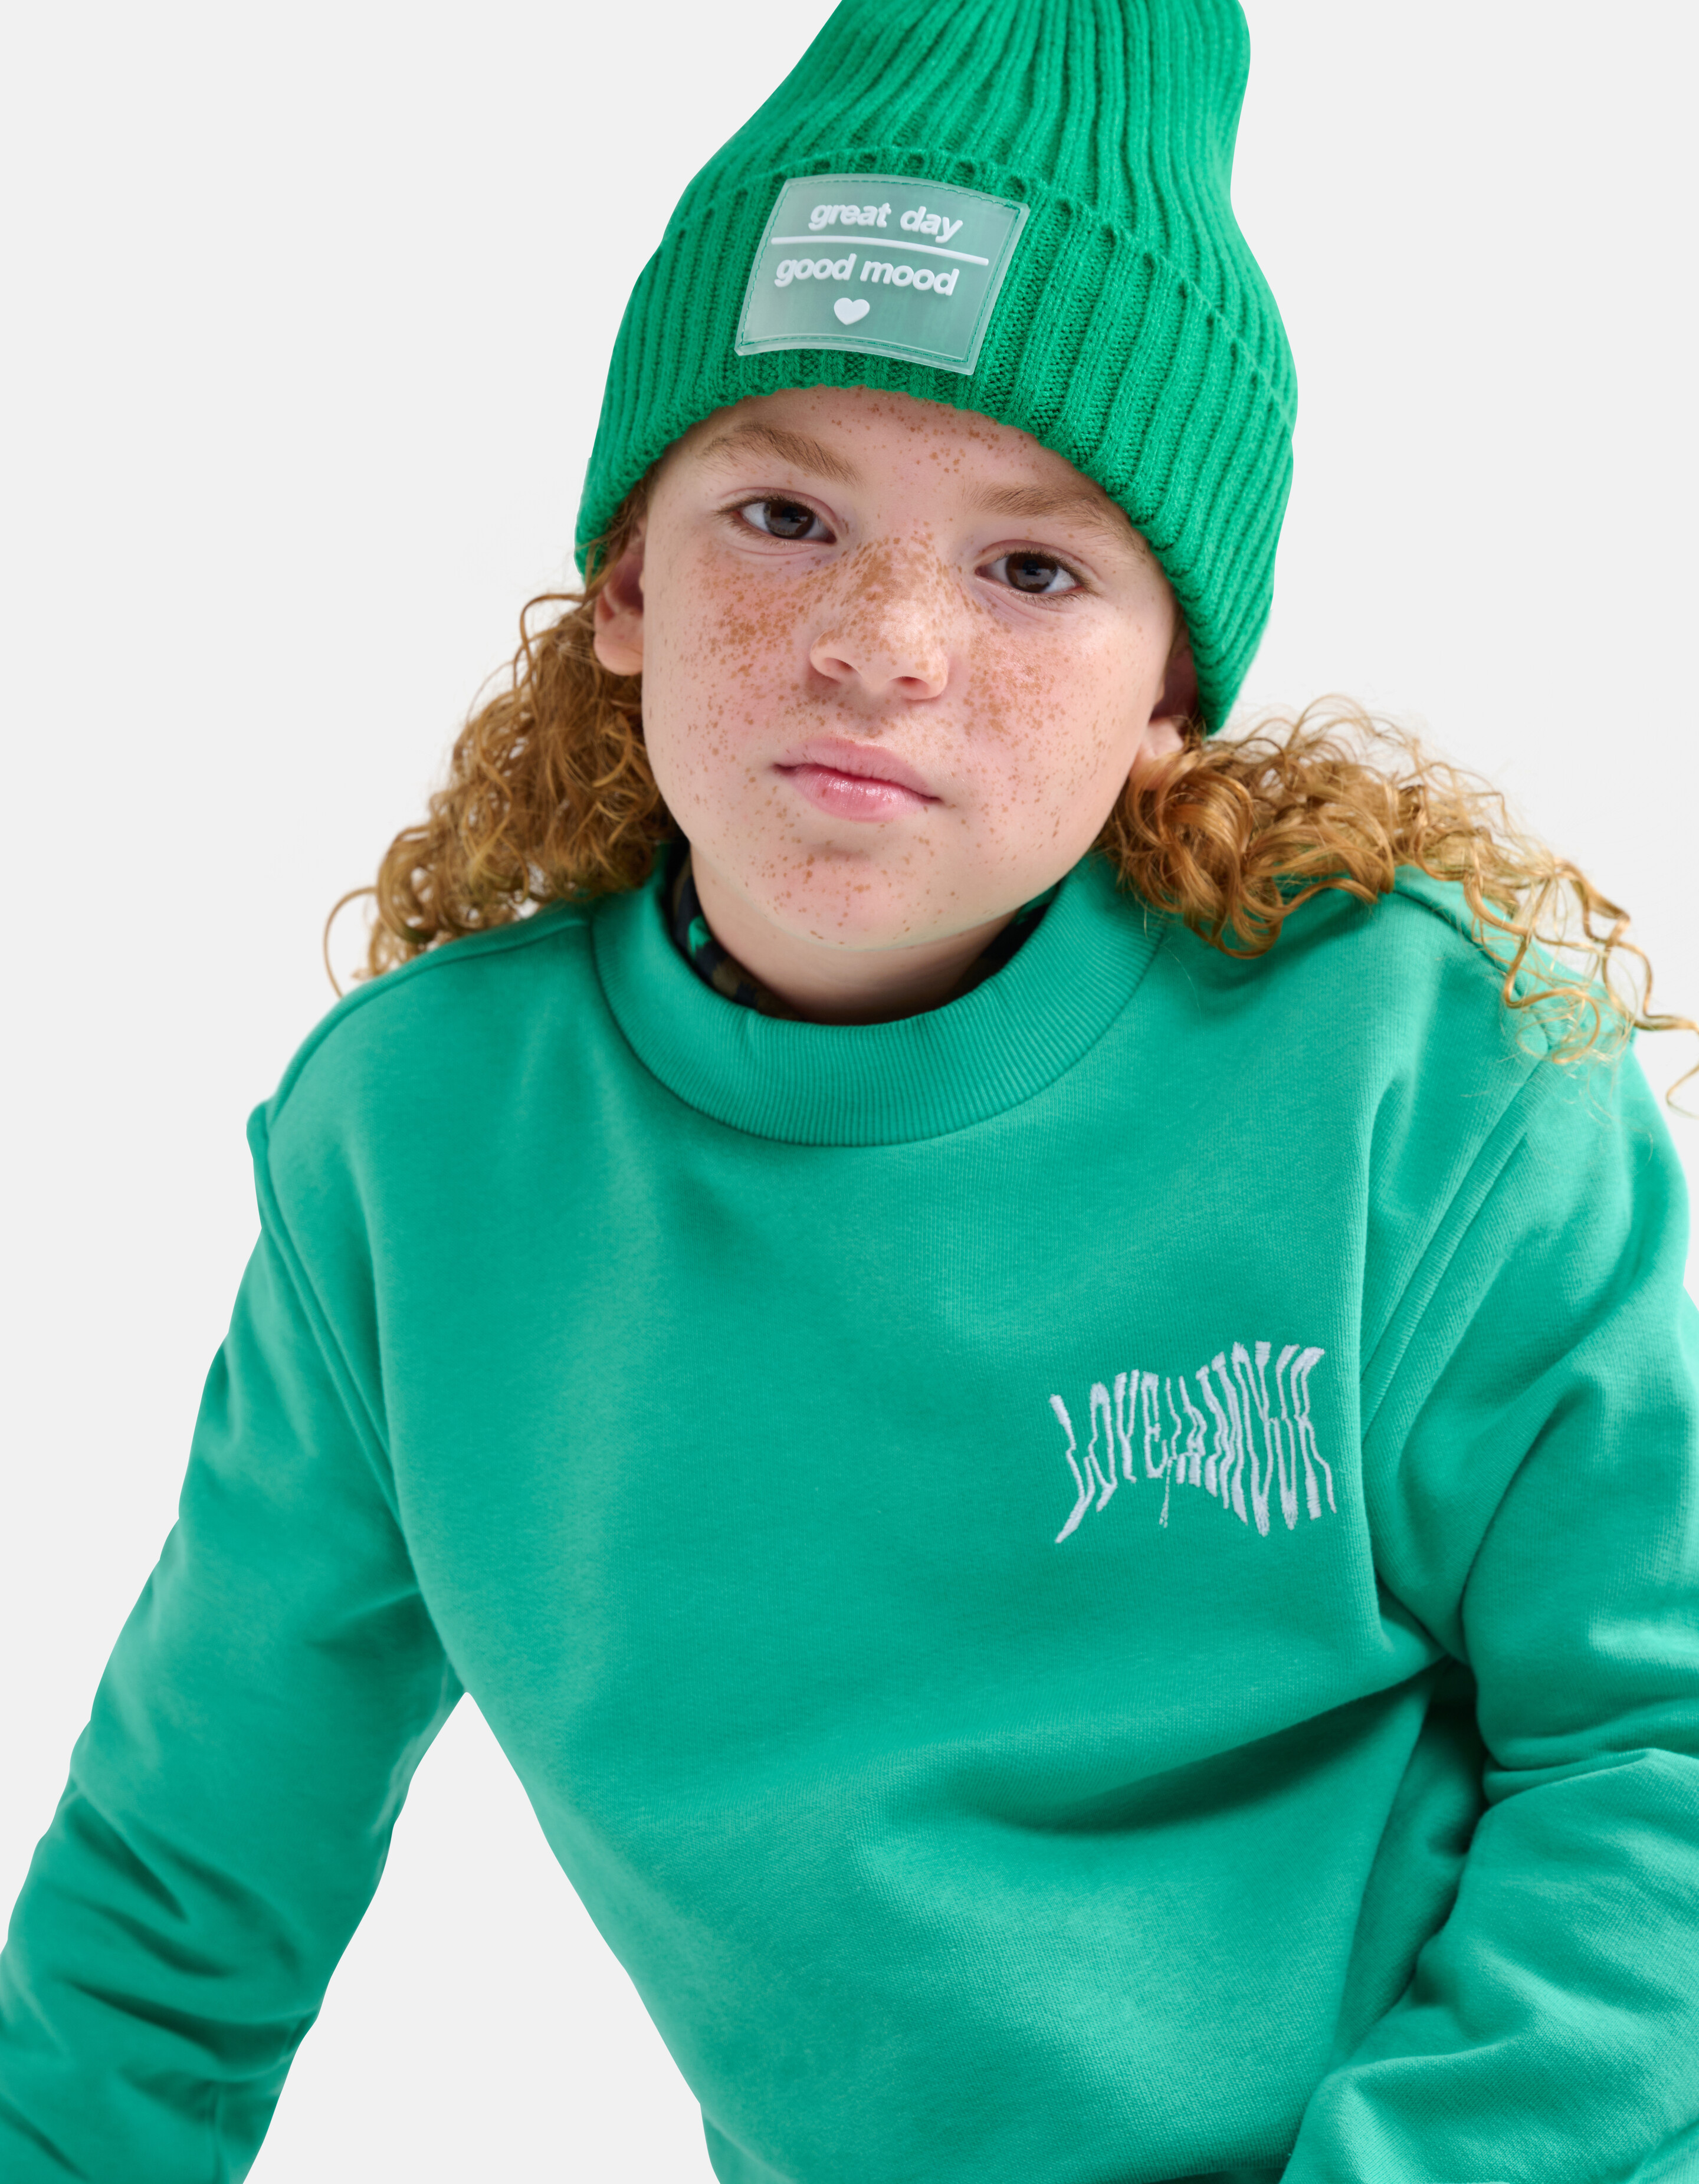 Sweatshirt mit Aufdruck Grün SHOEBY GIRLS